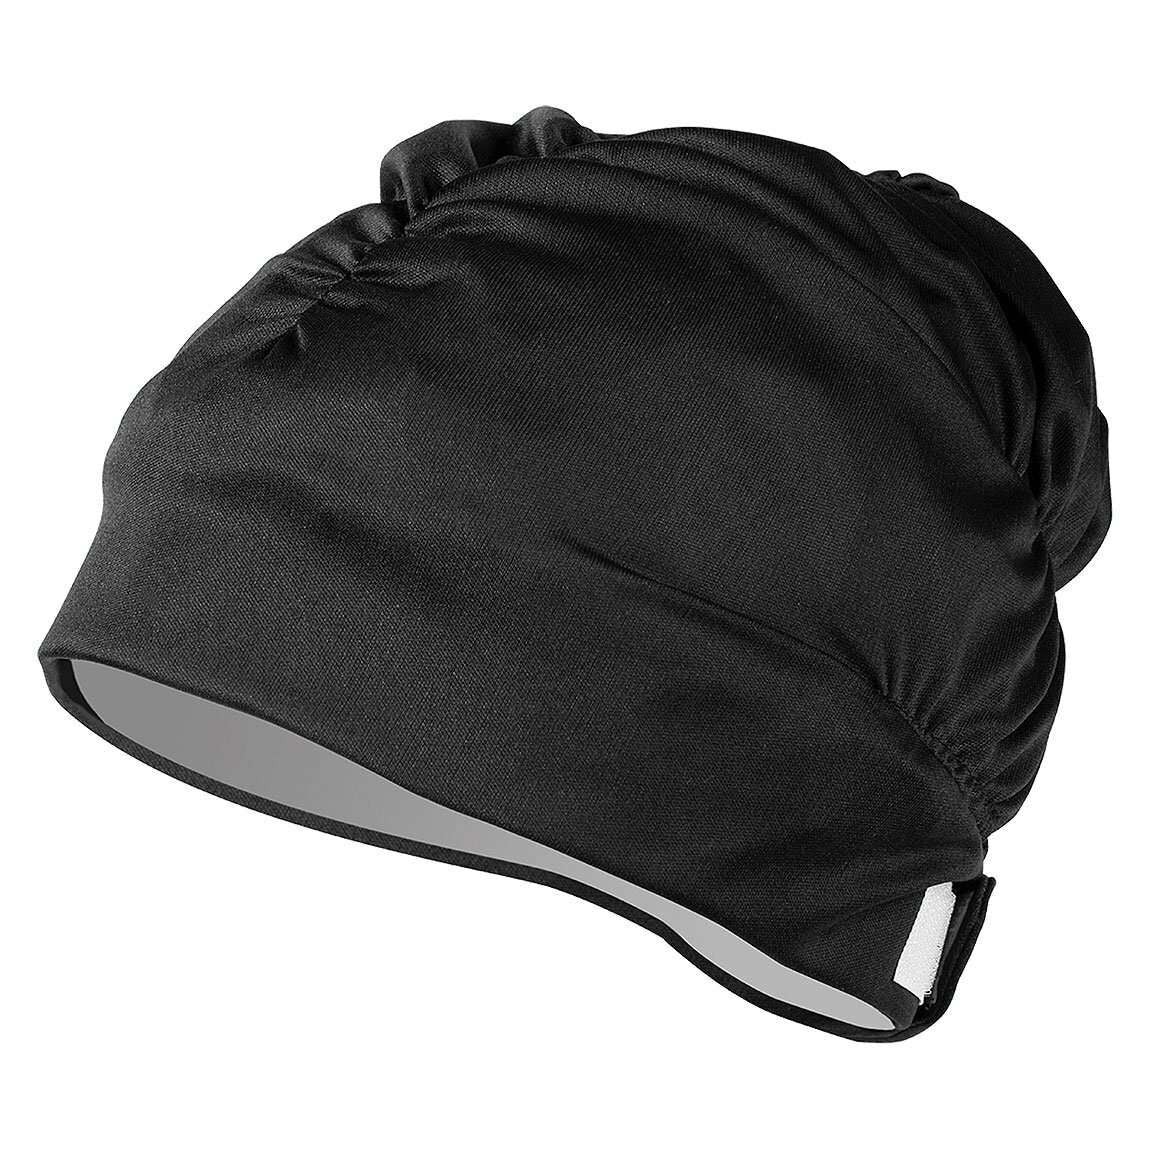 Aquasphere Aqua Comfort Black Adjustable Swim Cap